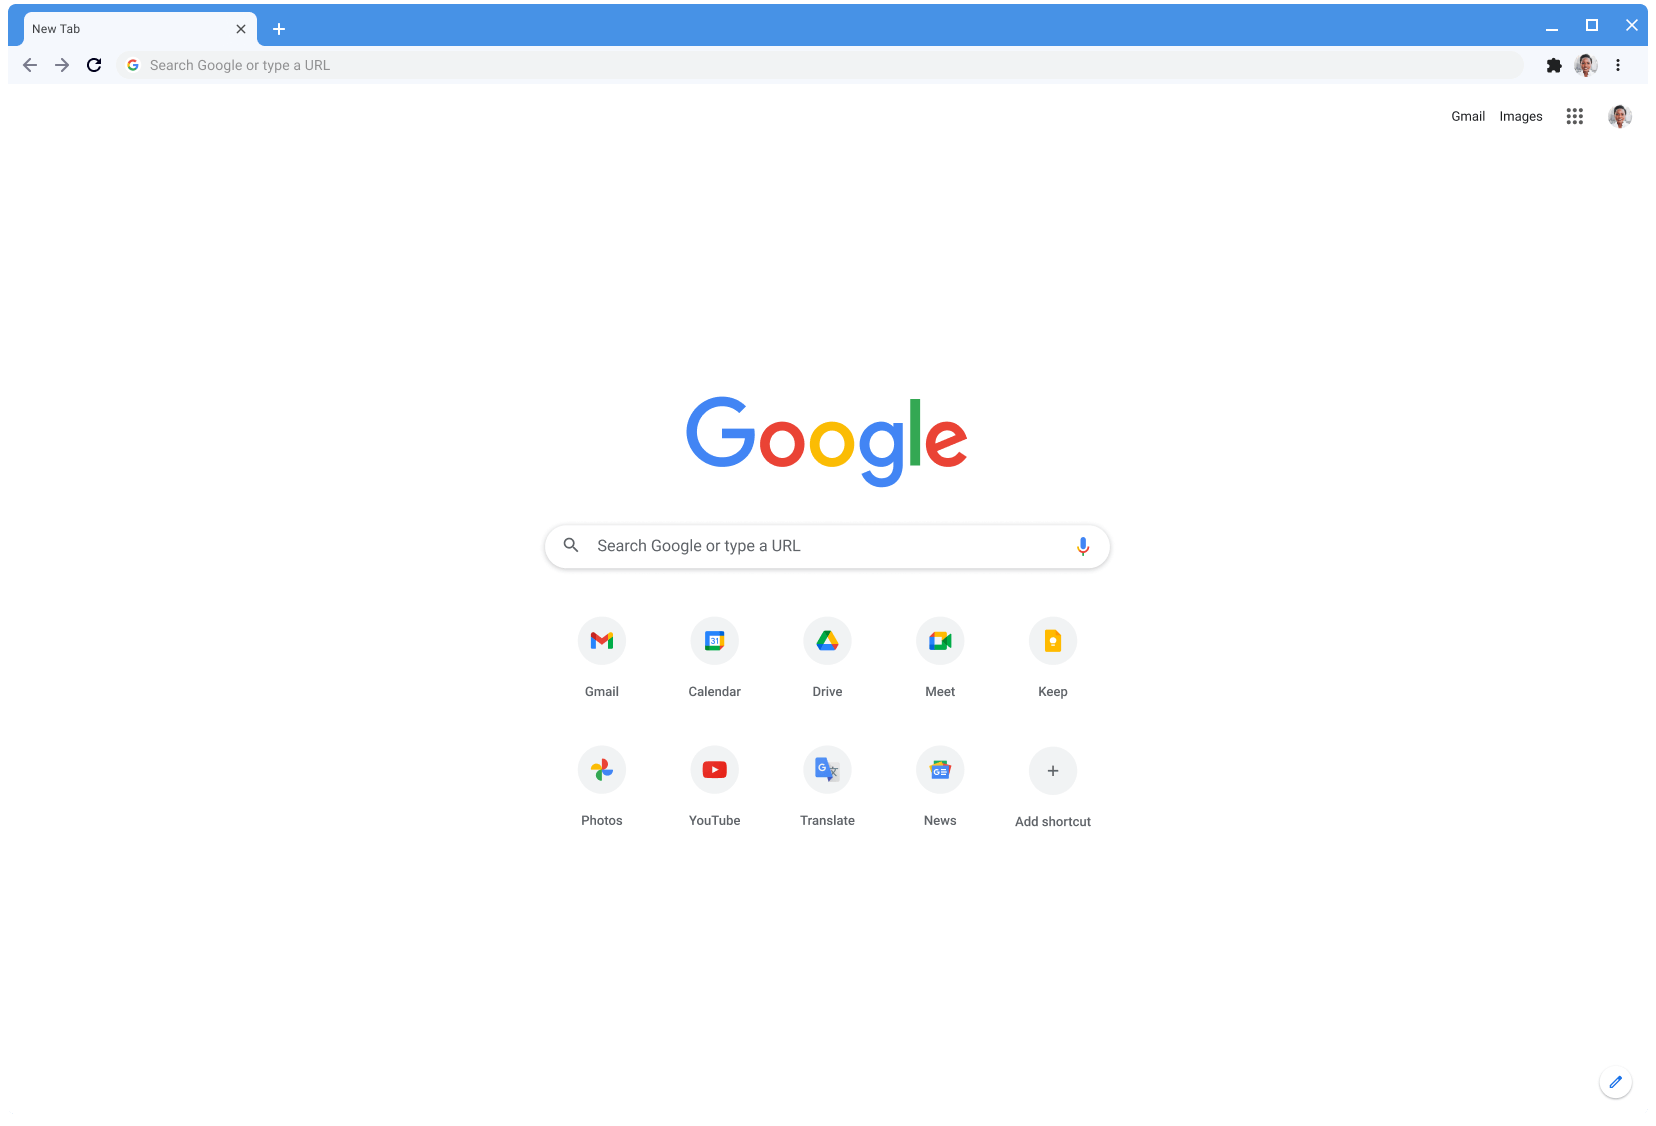 Jendela browser Chrome menampilkan Google.com menggunakan tema Classic.